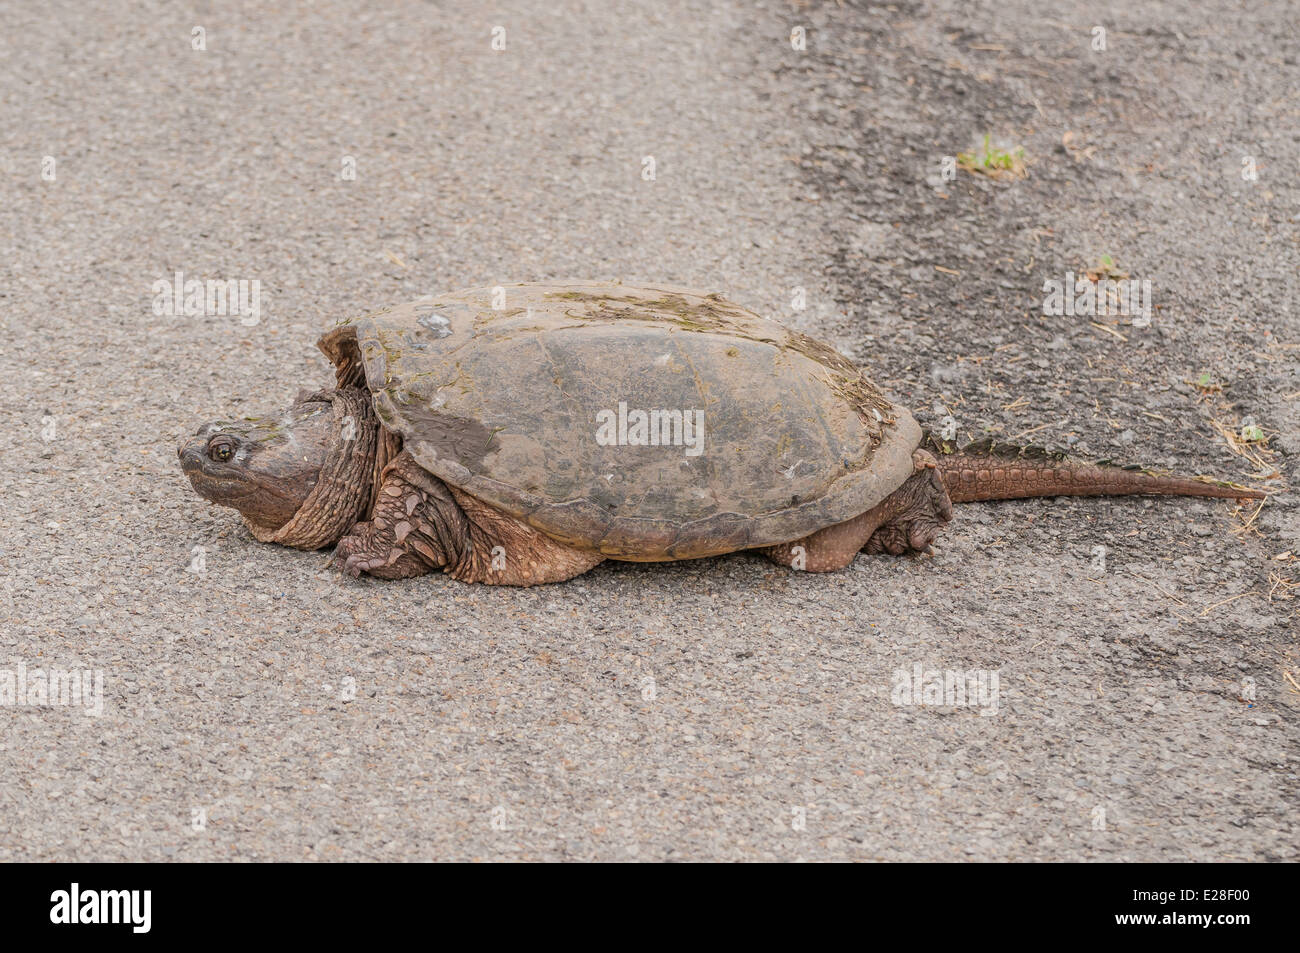 Une tortue serpentine traversant une route près d'un marais. Banque D'Images